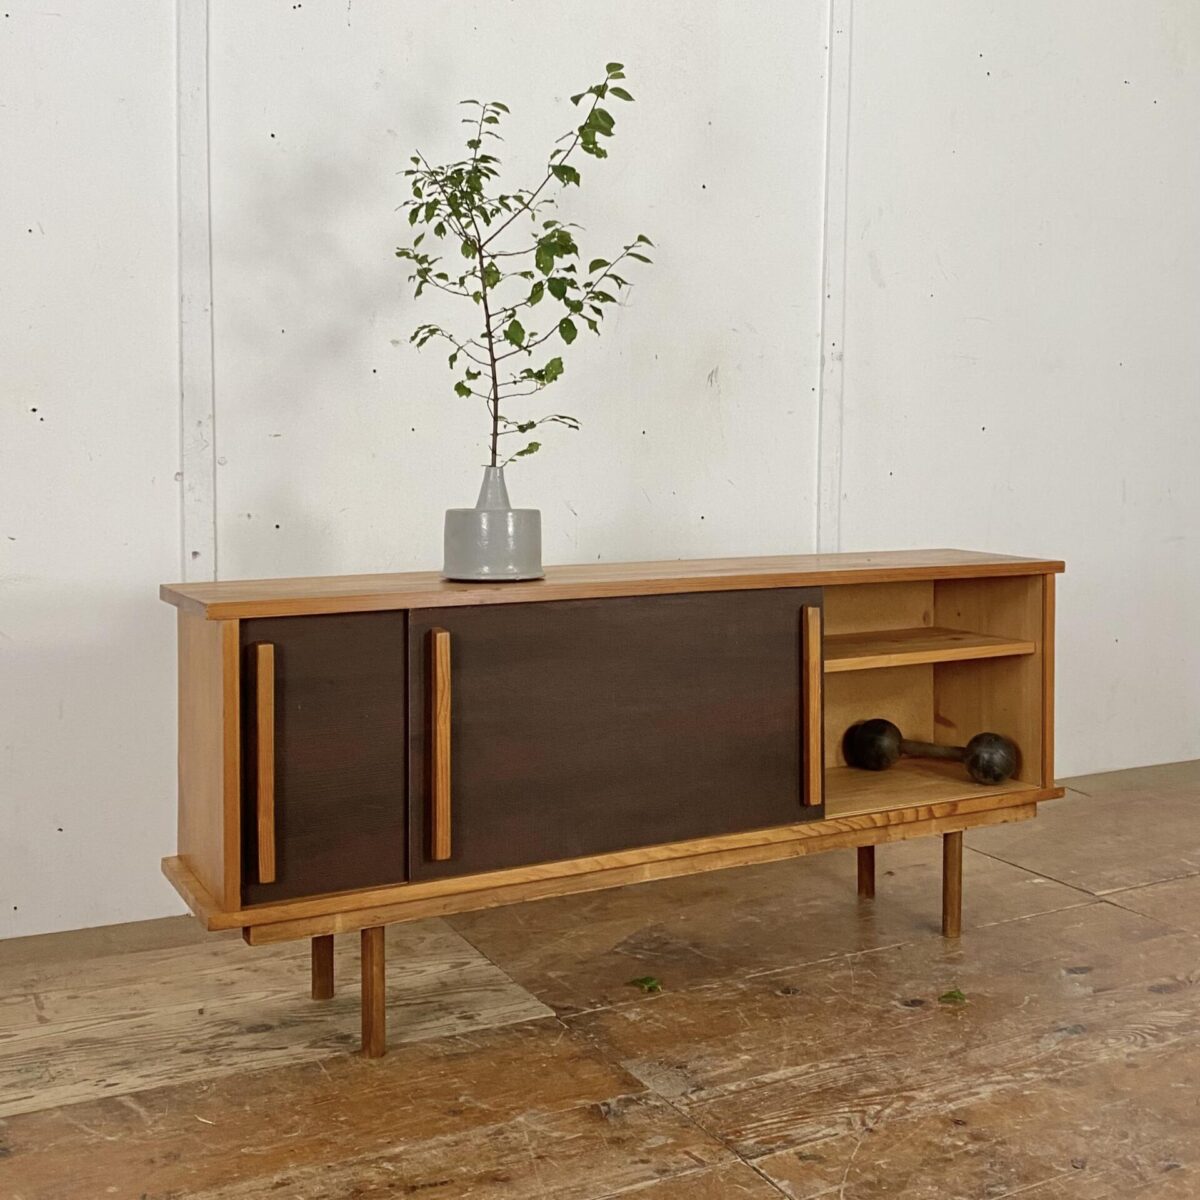 Deuxieme.shop Swissdesign Sideboard mit Pavatex Schiebetüren. 50er Jahre 60er Jahre swiss minimalism furniture. Vintage Lowboard.